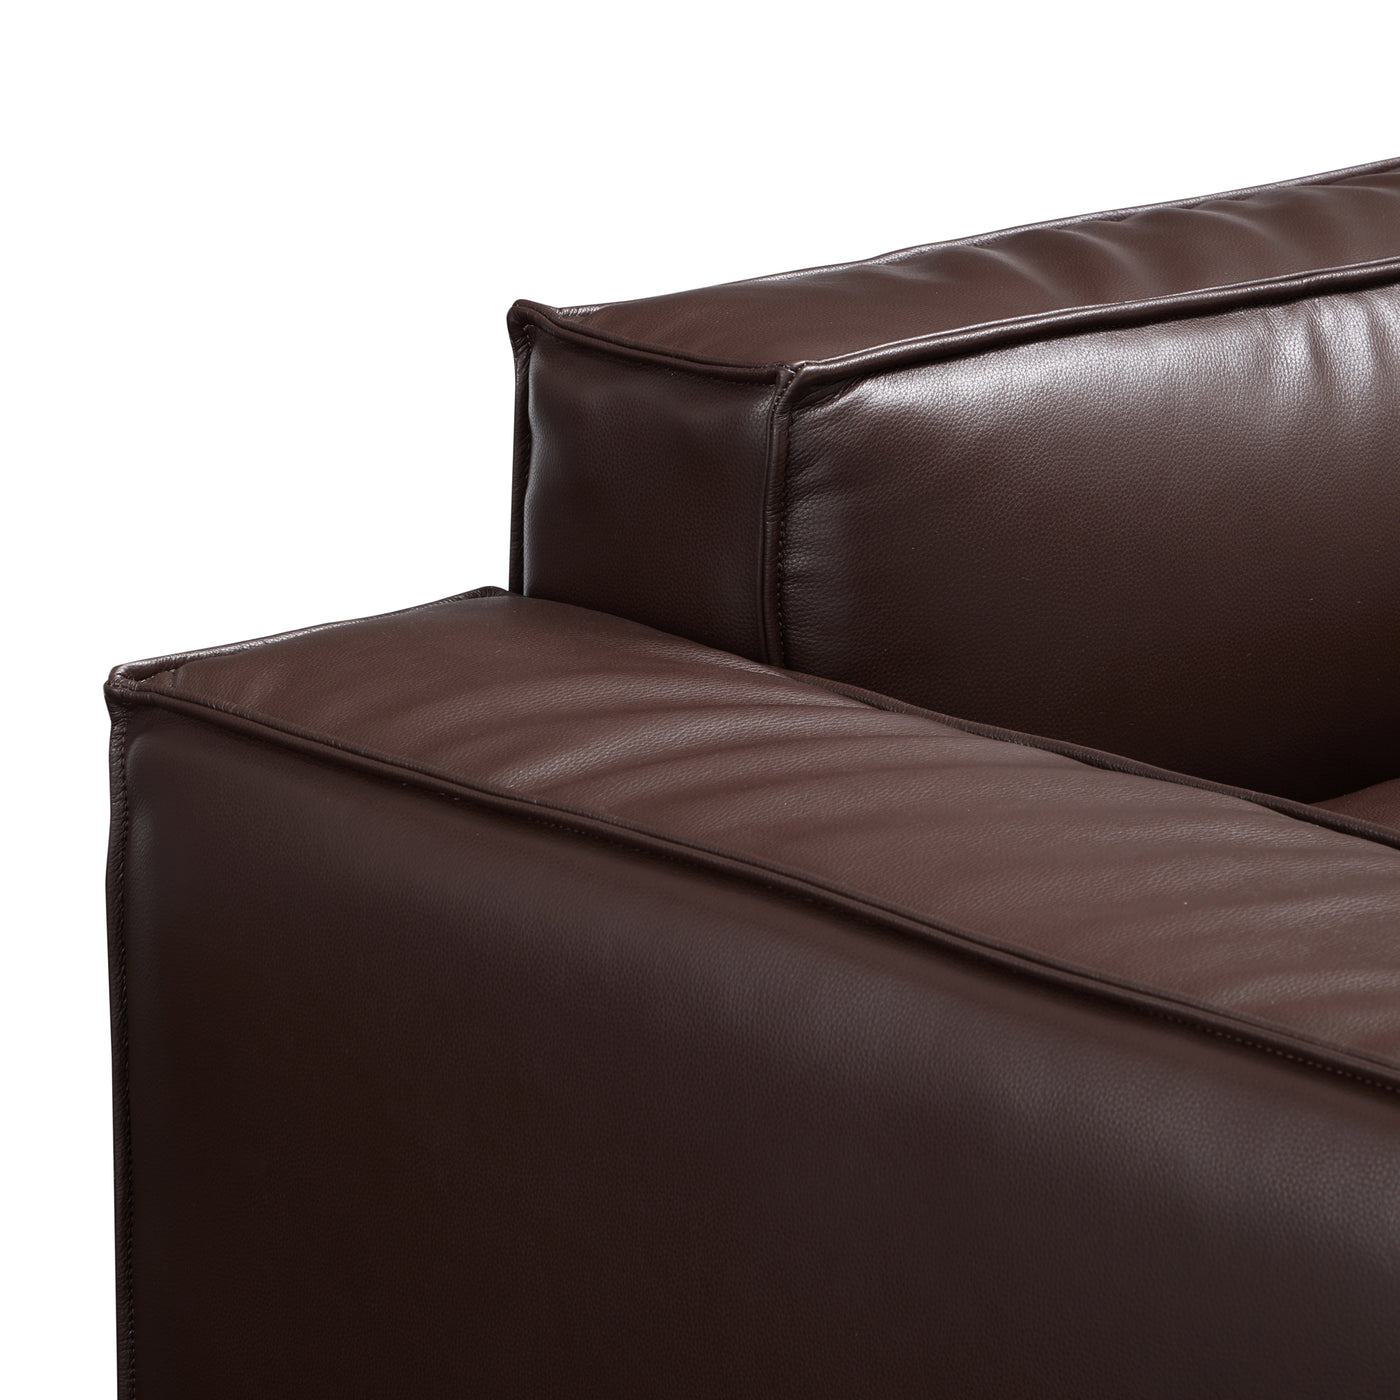 Luxury Minimalist Dark Brown Leather Sectional-Dark Brown